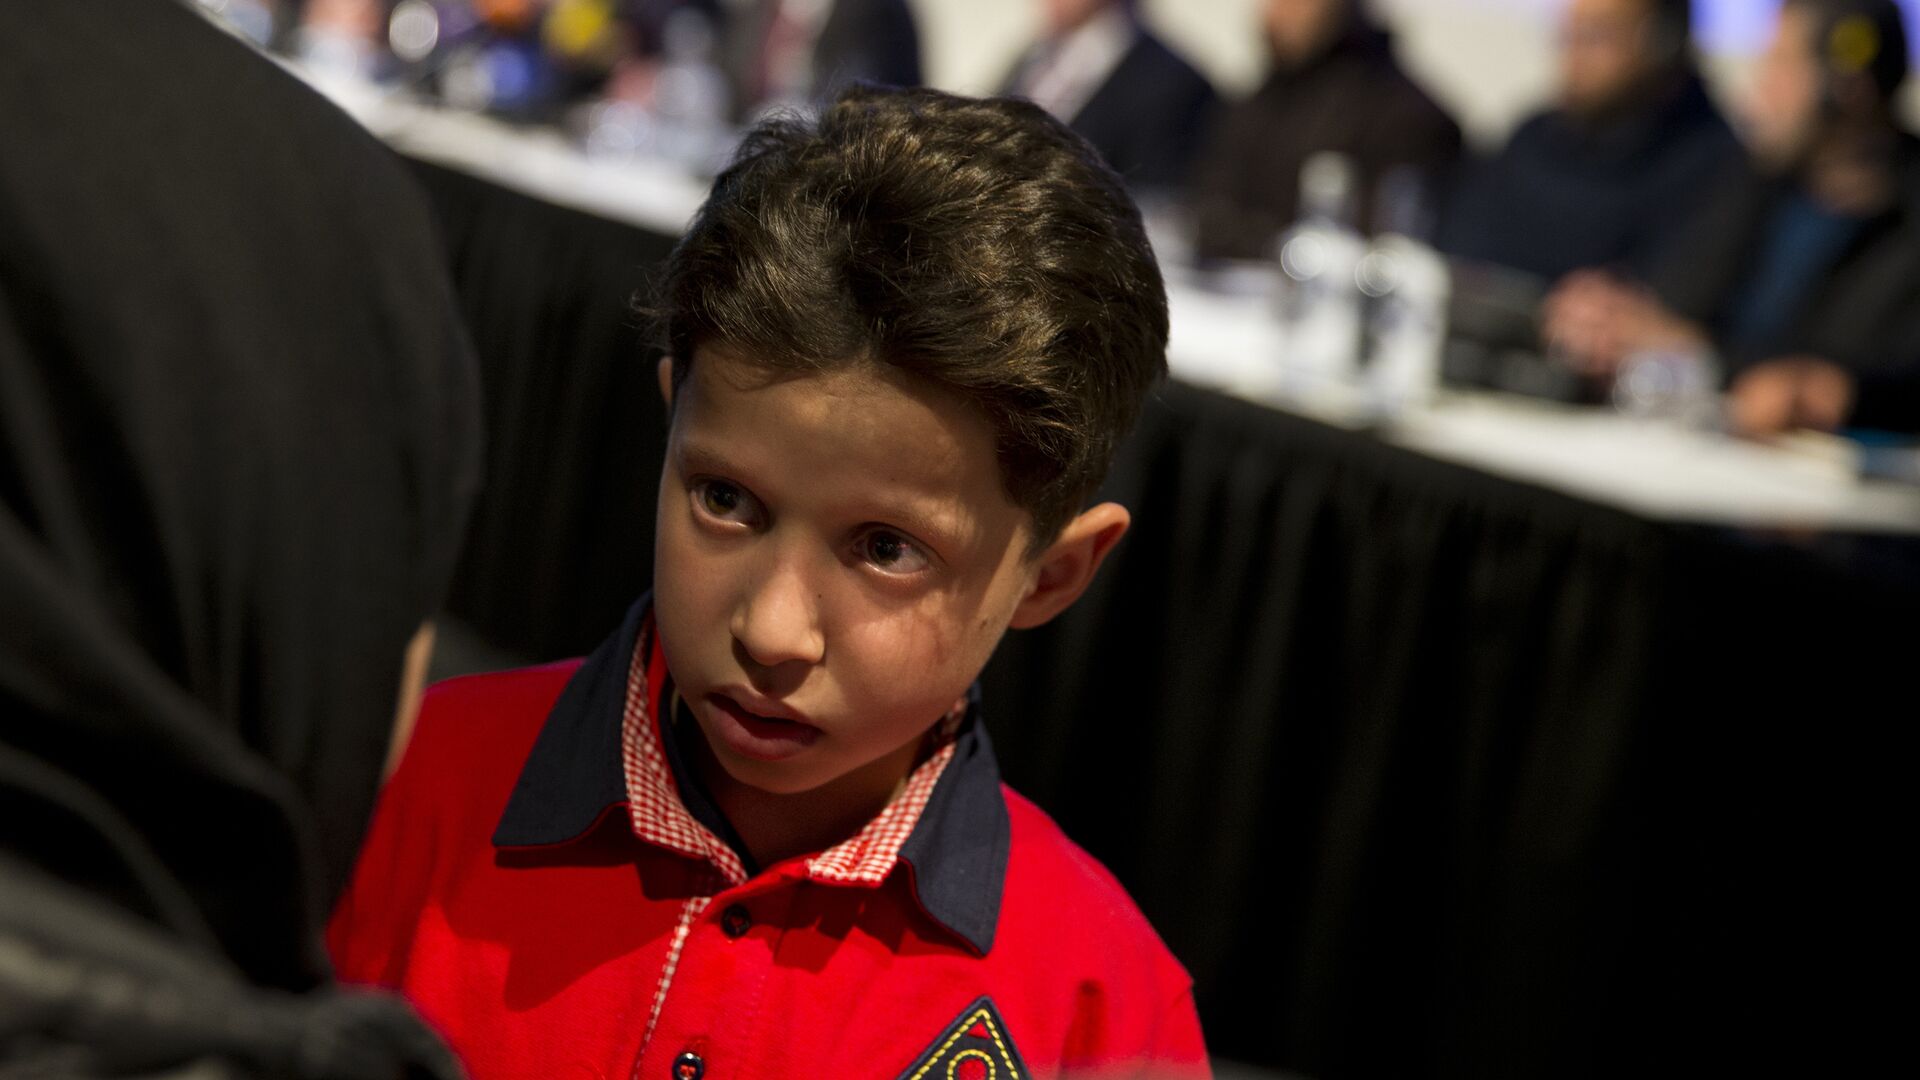 Сирийский мальчик Хасан Диаб на пресс-конференции по вопросу применения химического оружия в Сирии в Гааге. 26 апреля 2018 - ИноСМИ, 1920, 10.10.2018